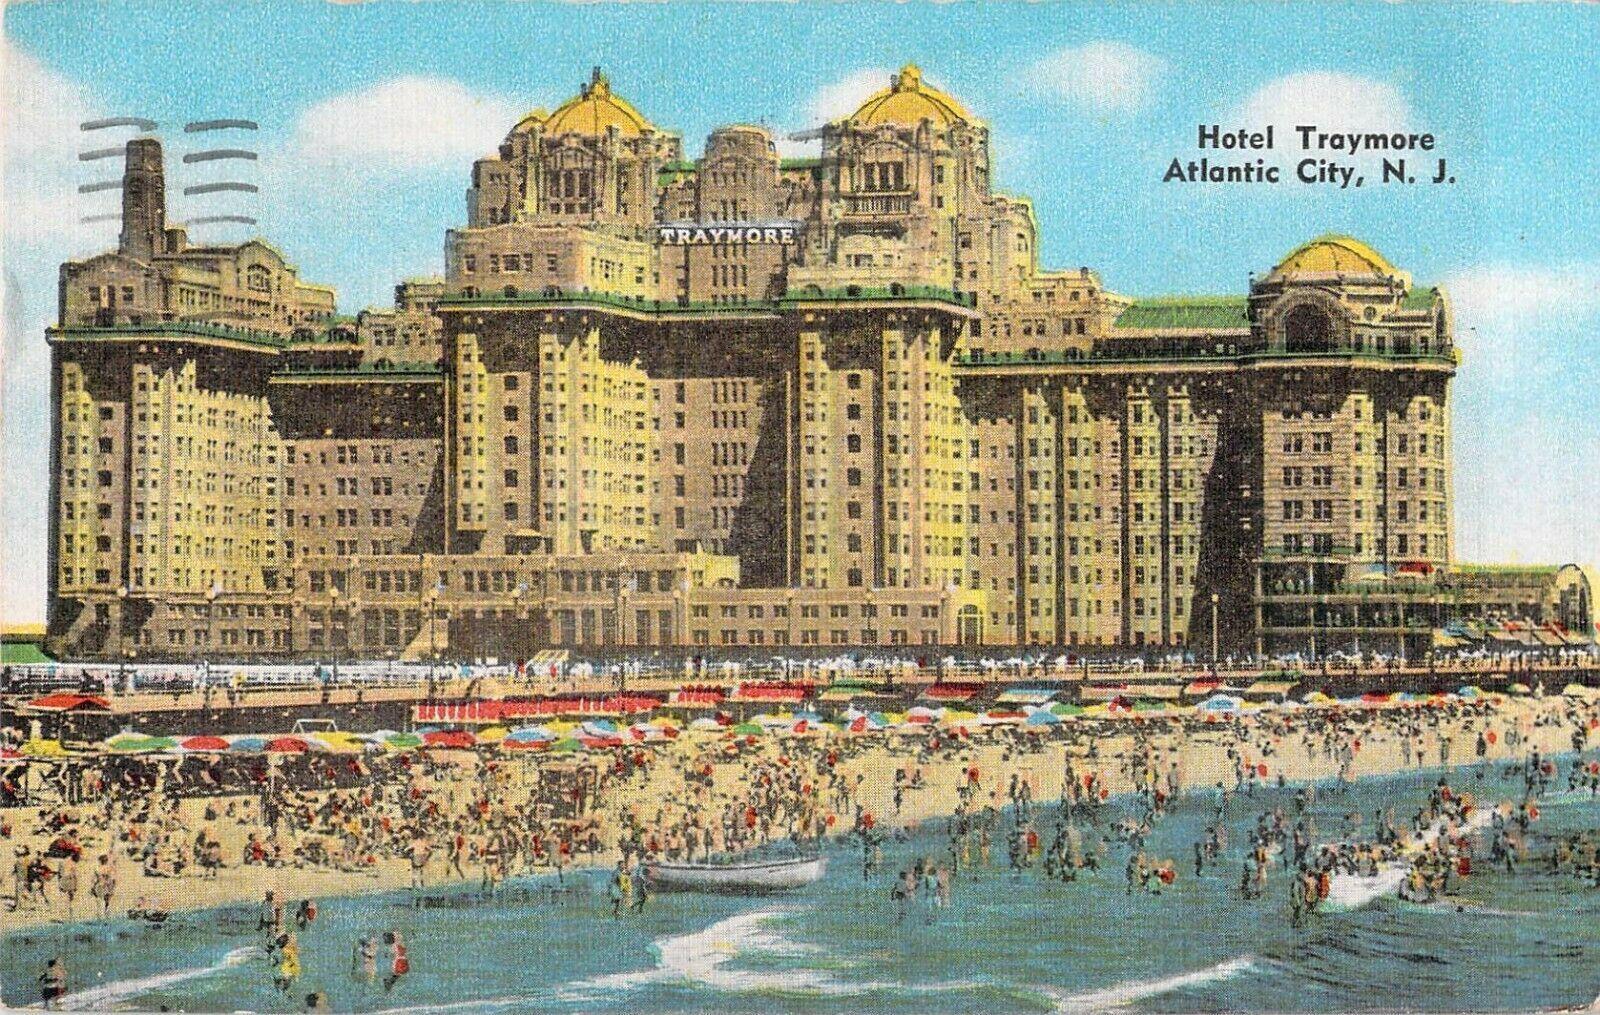 Boardwalk Hotel Traymore Atlantic City NJ New Jersey June 23 1951 postmark